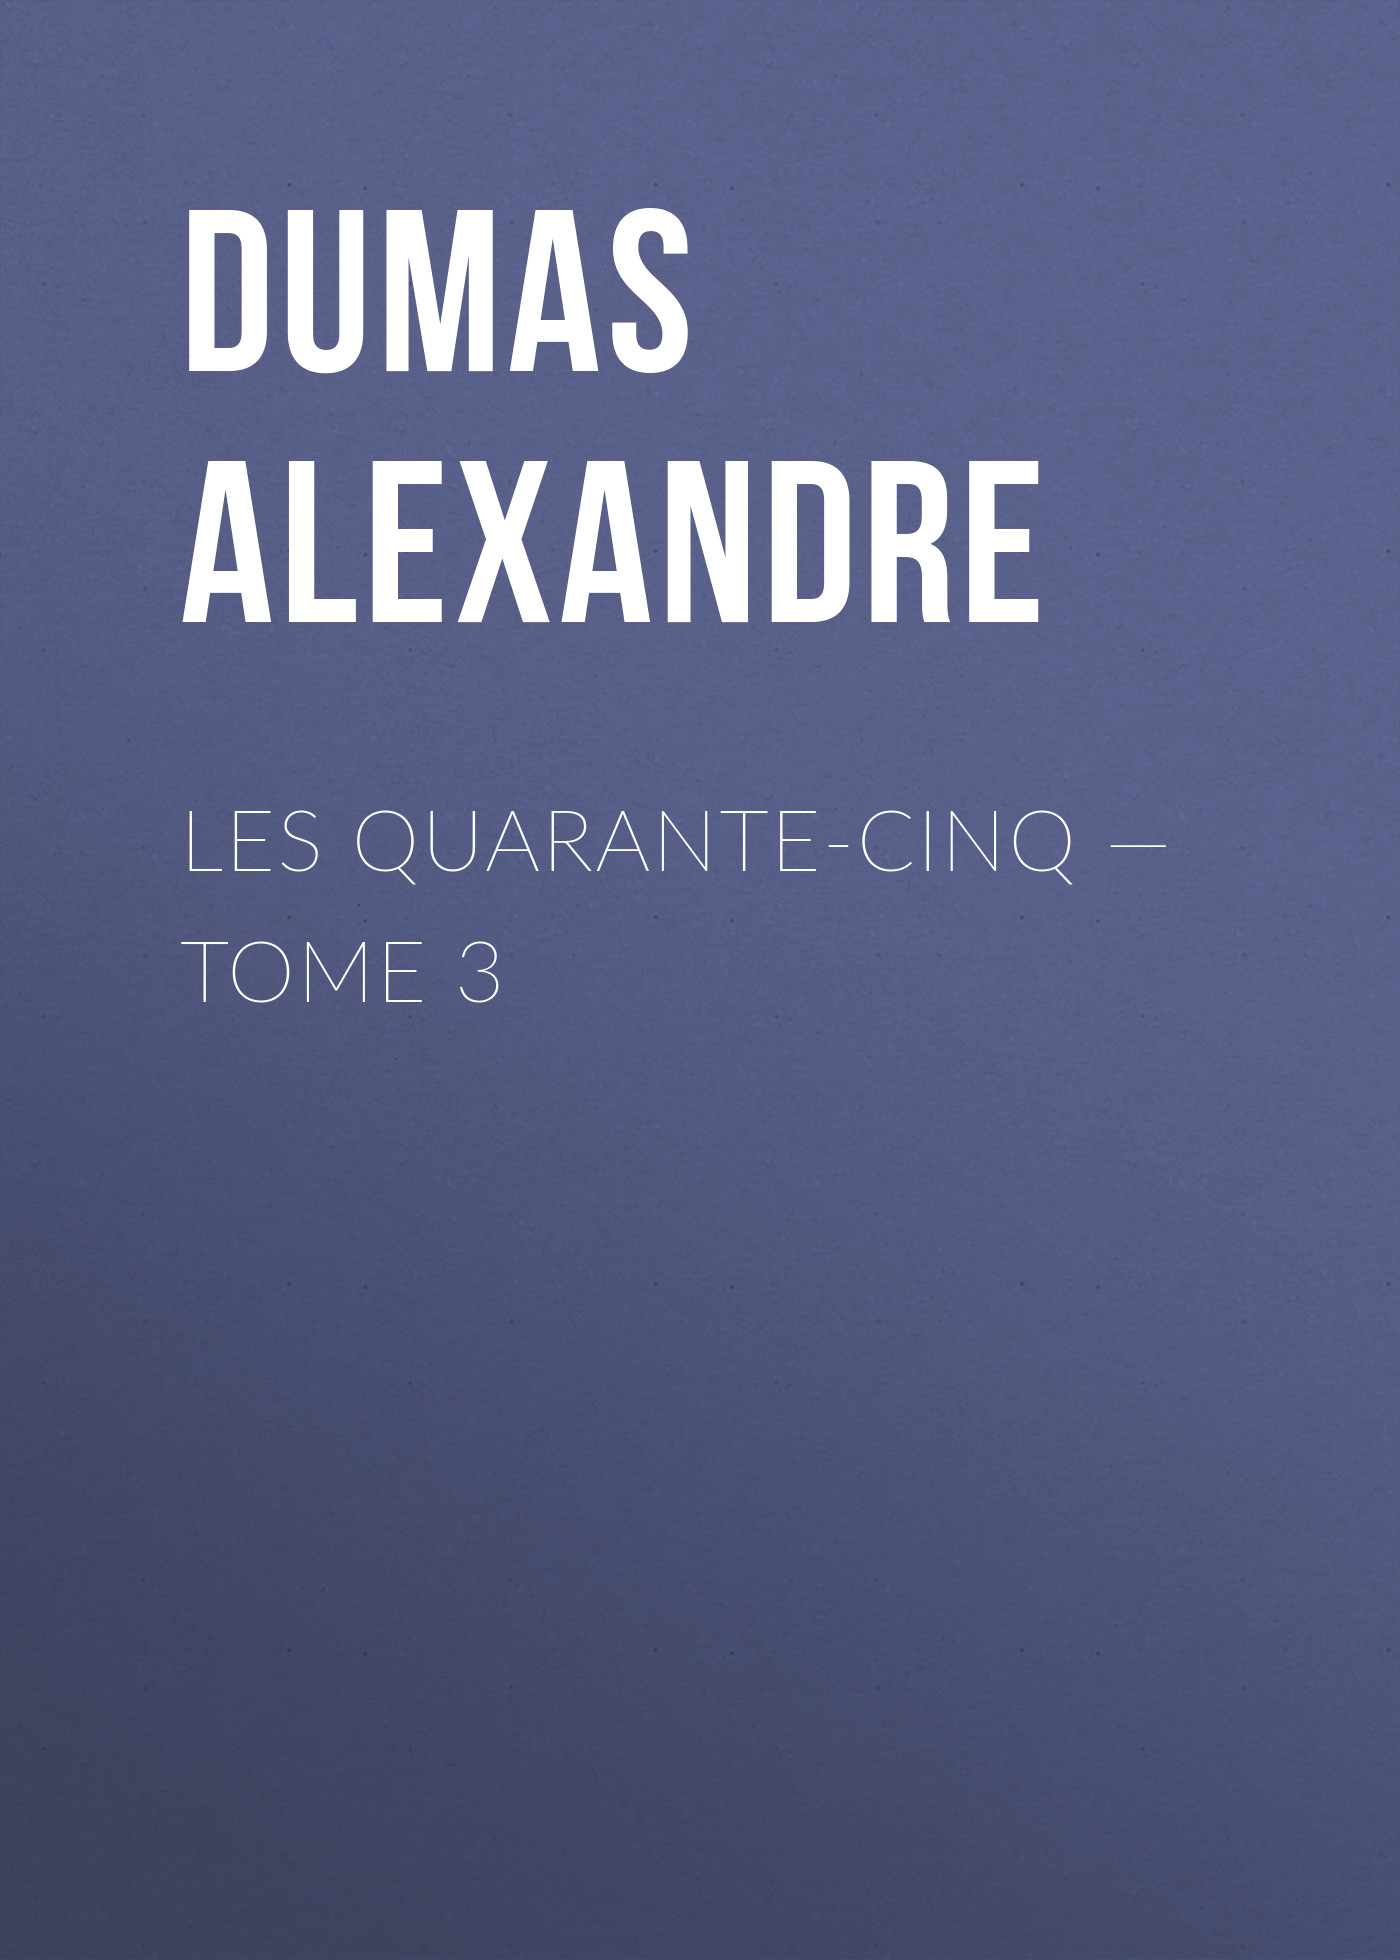 Книга Les Quarante-Cinq – Tome 3 из серии , созданная Alexandre Dumas, может относится к жанру Литература 19 века, Зарубежная старинная литература, Зарубежная классика. Стоимость электронной книги Les Quarante-Cinq – Tome 3 с идентификатором 25203575 составляет 0 руб.